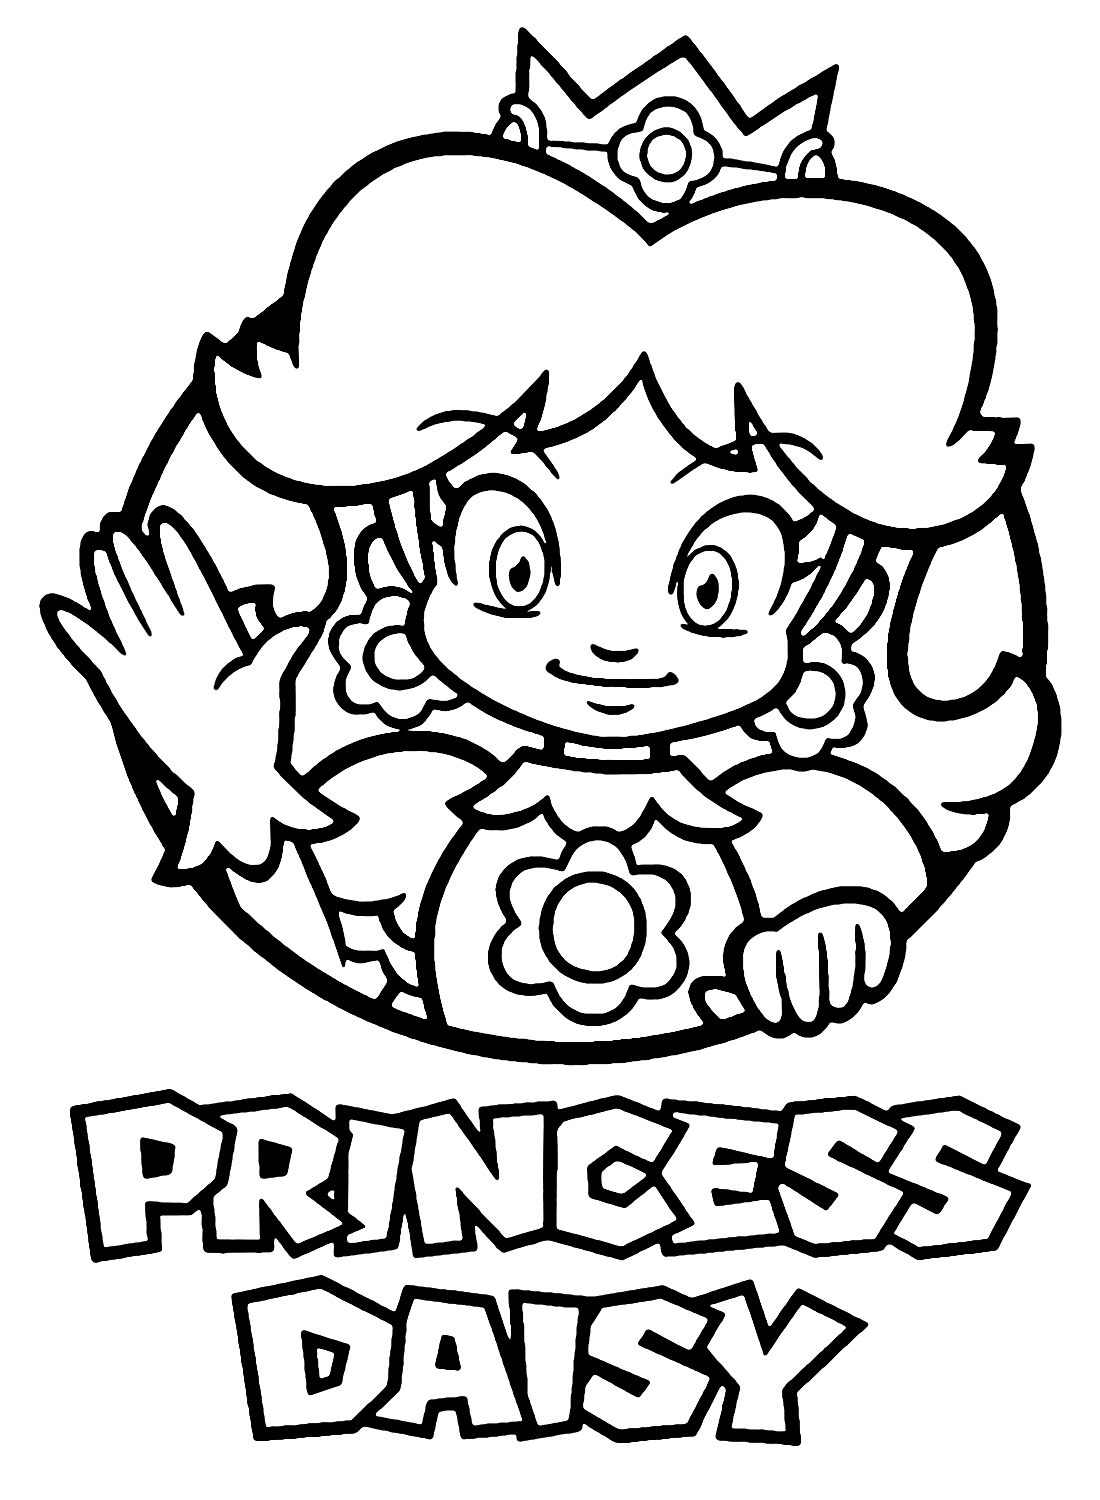 Super Mario Bros. Принцесса Дейзи из мультфильма «Принцесса Дейзи»